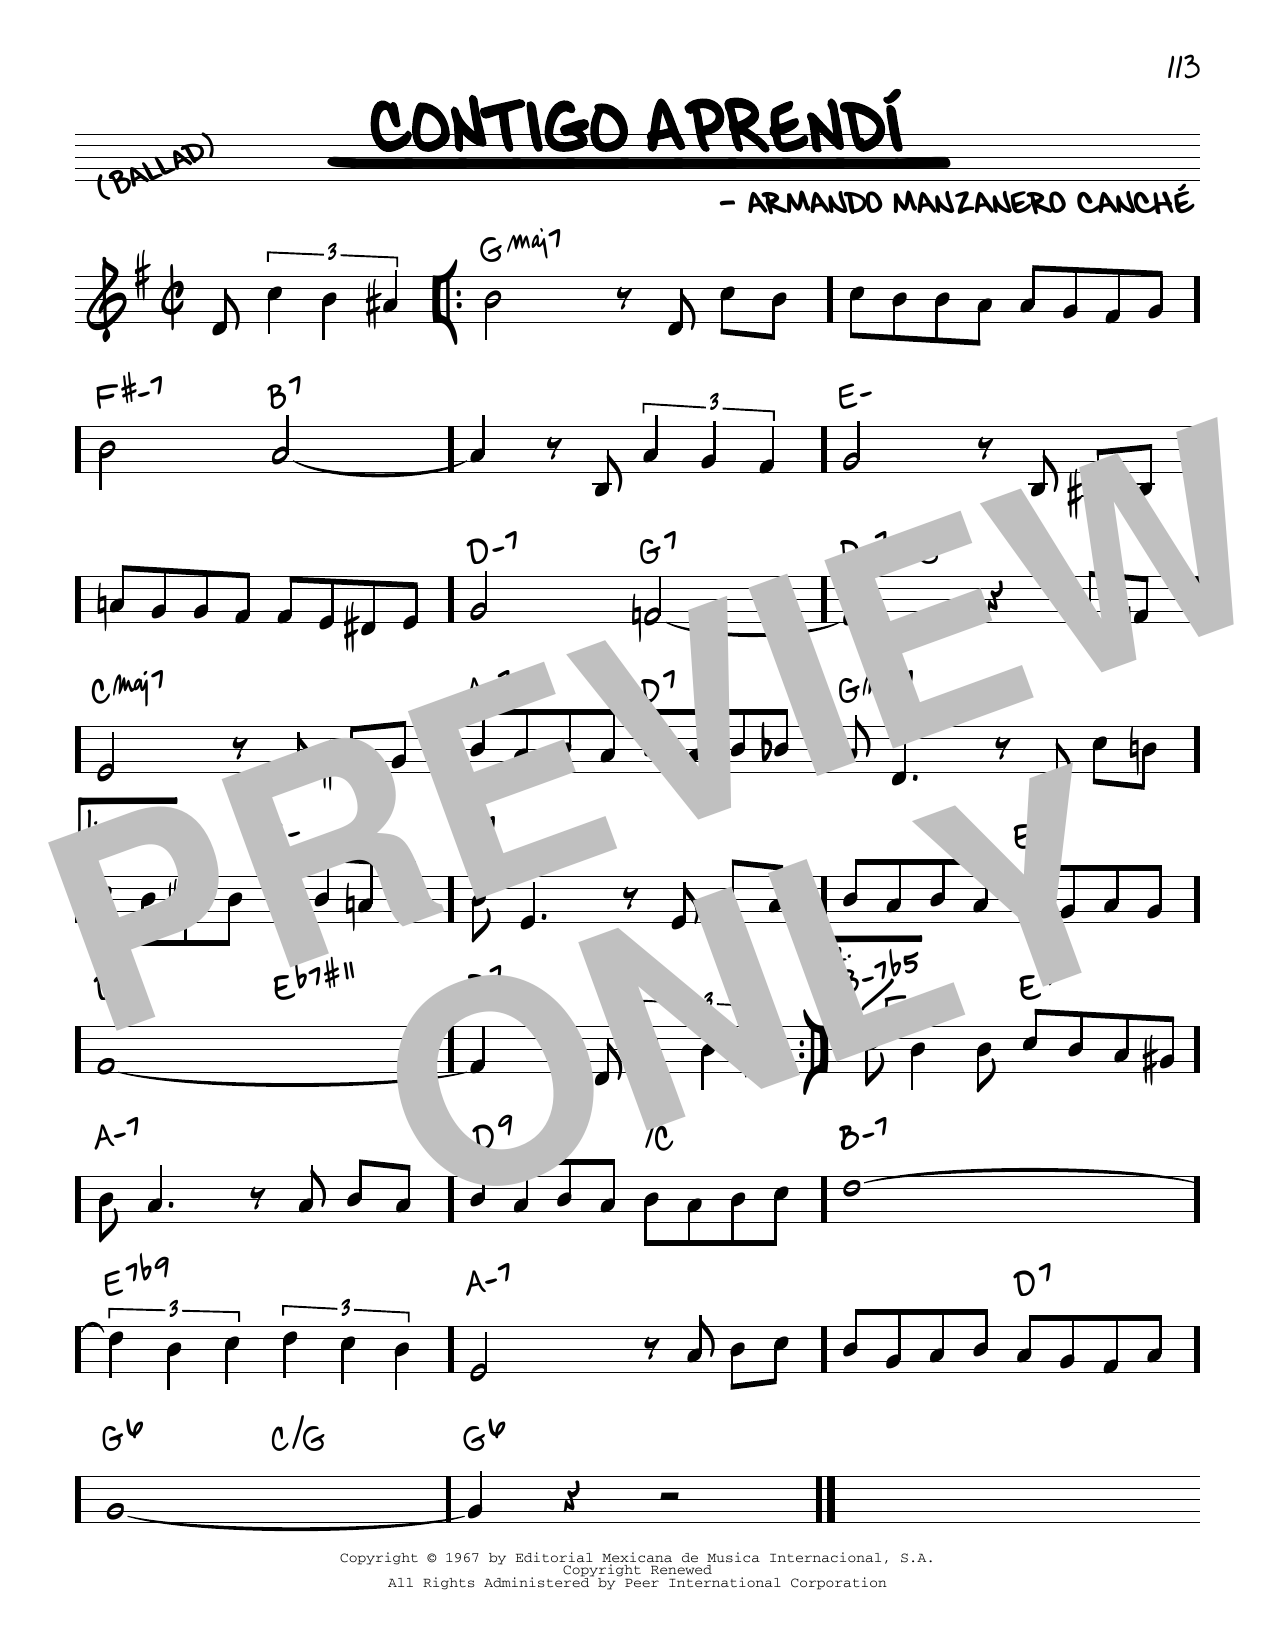 Armando Manzanero Canche Contigo Aprendi Sheet Music Notes & Chords for Real Book – Melody & Chords - Download or Print PDF